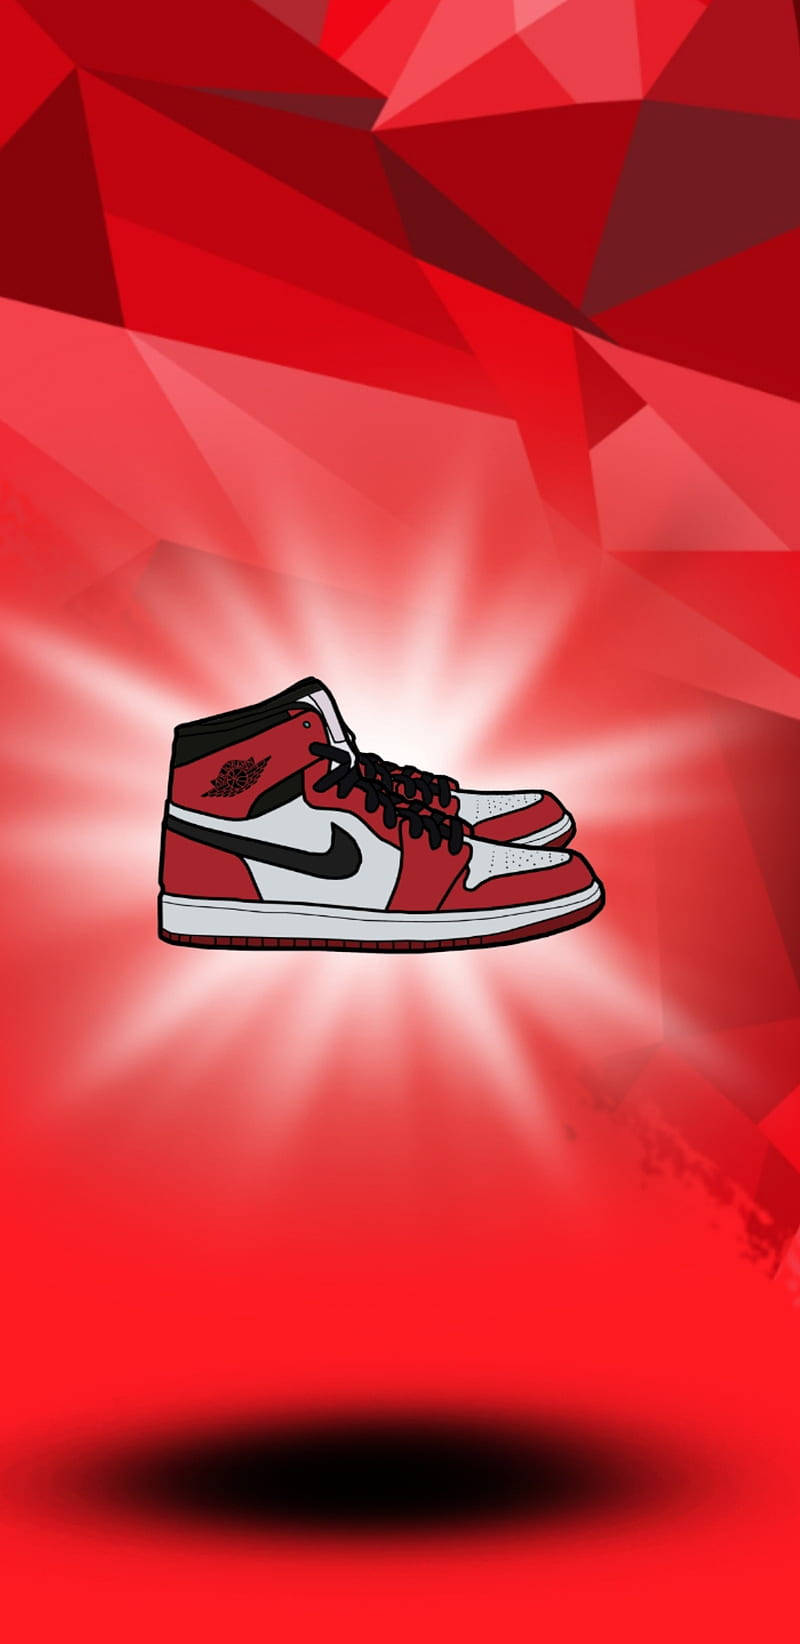 Nike Air Jordan 1 Red Background | Wallpapers.com